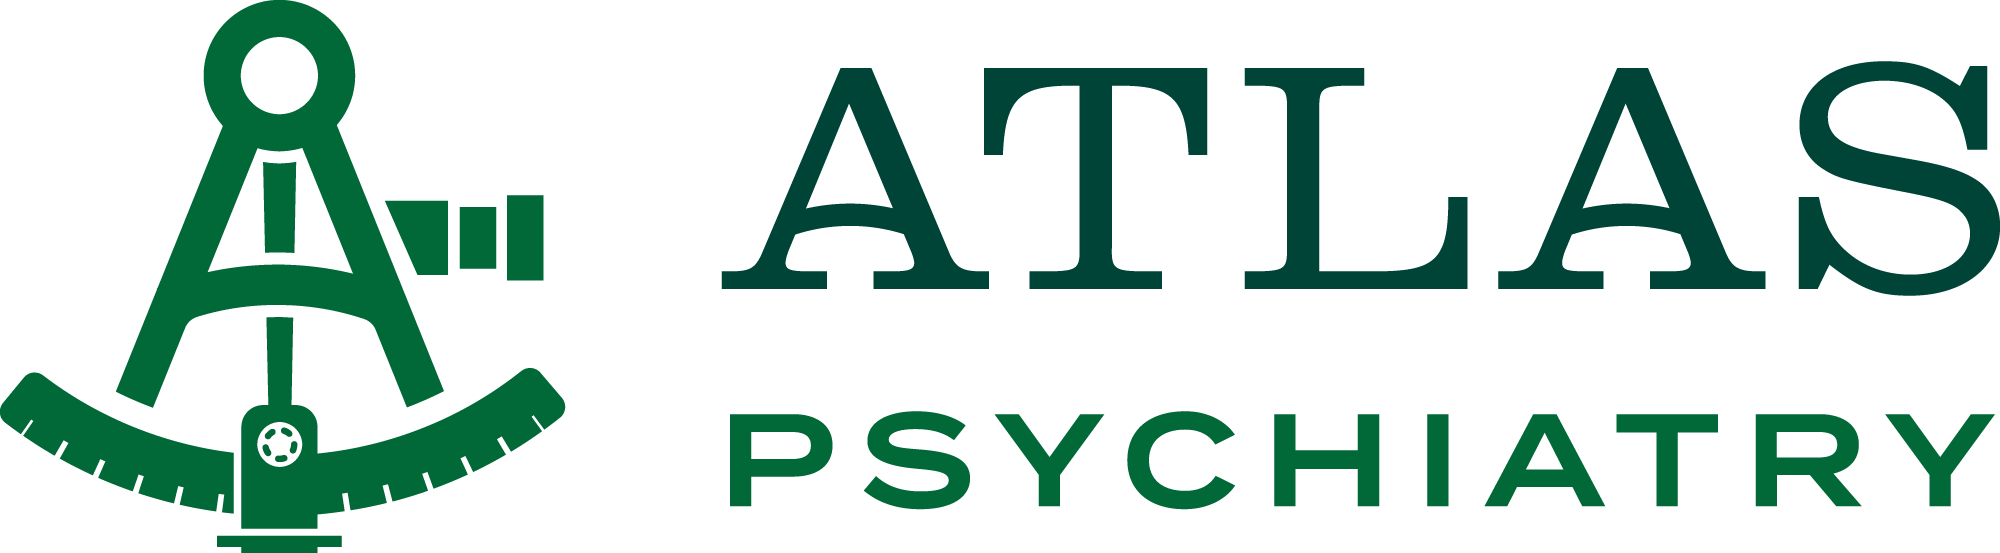 Atlas Psychiatry